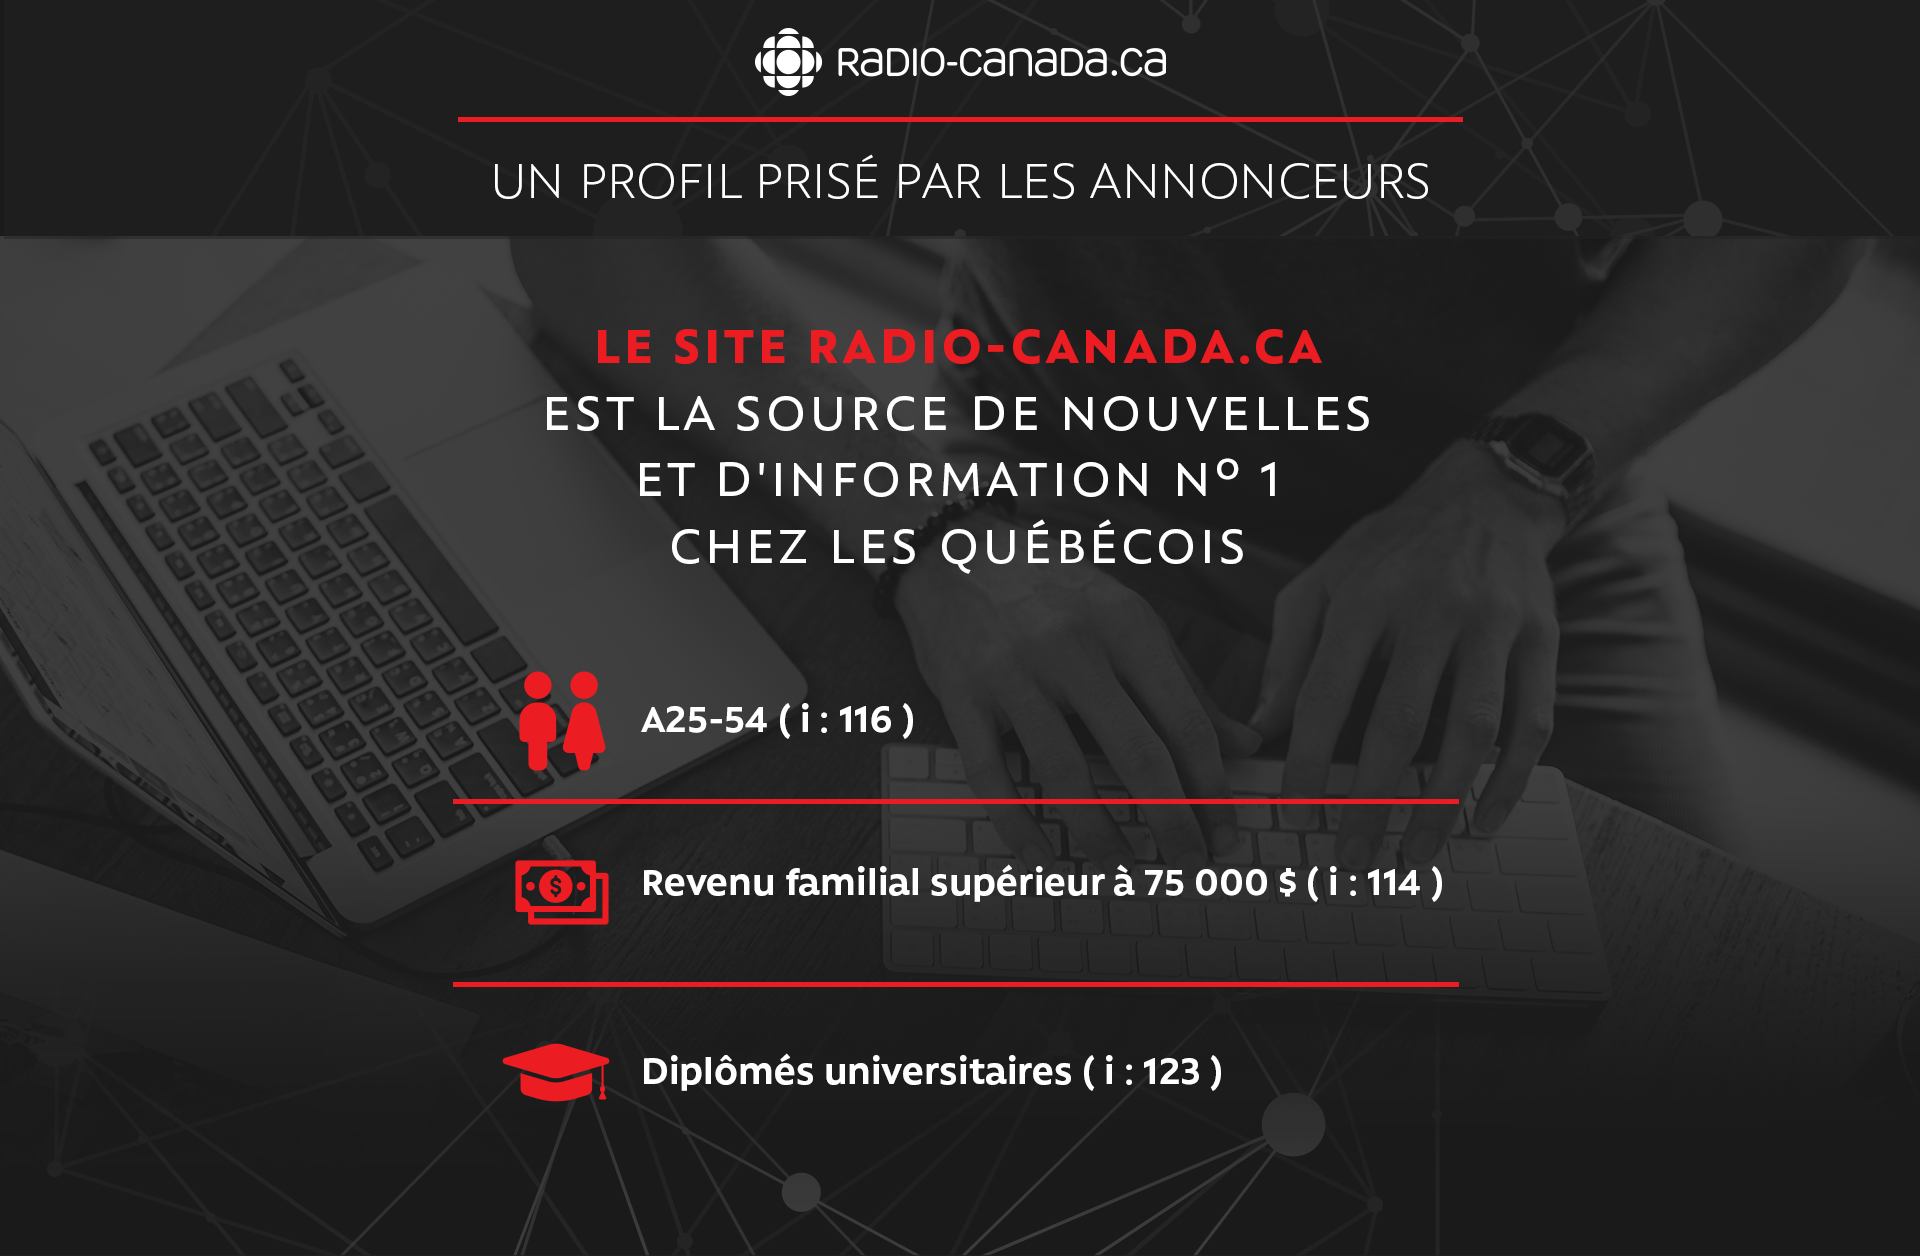 Radio-Canada.ca un profil prisé par les annonceurs